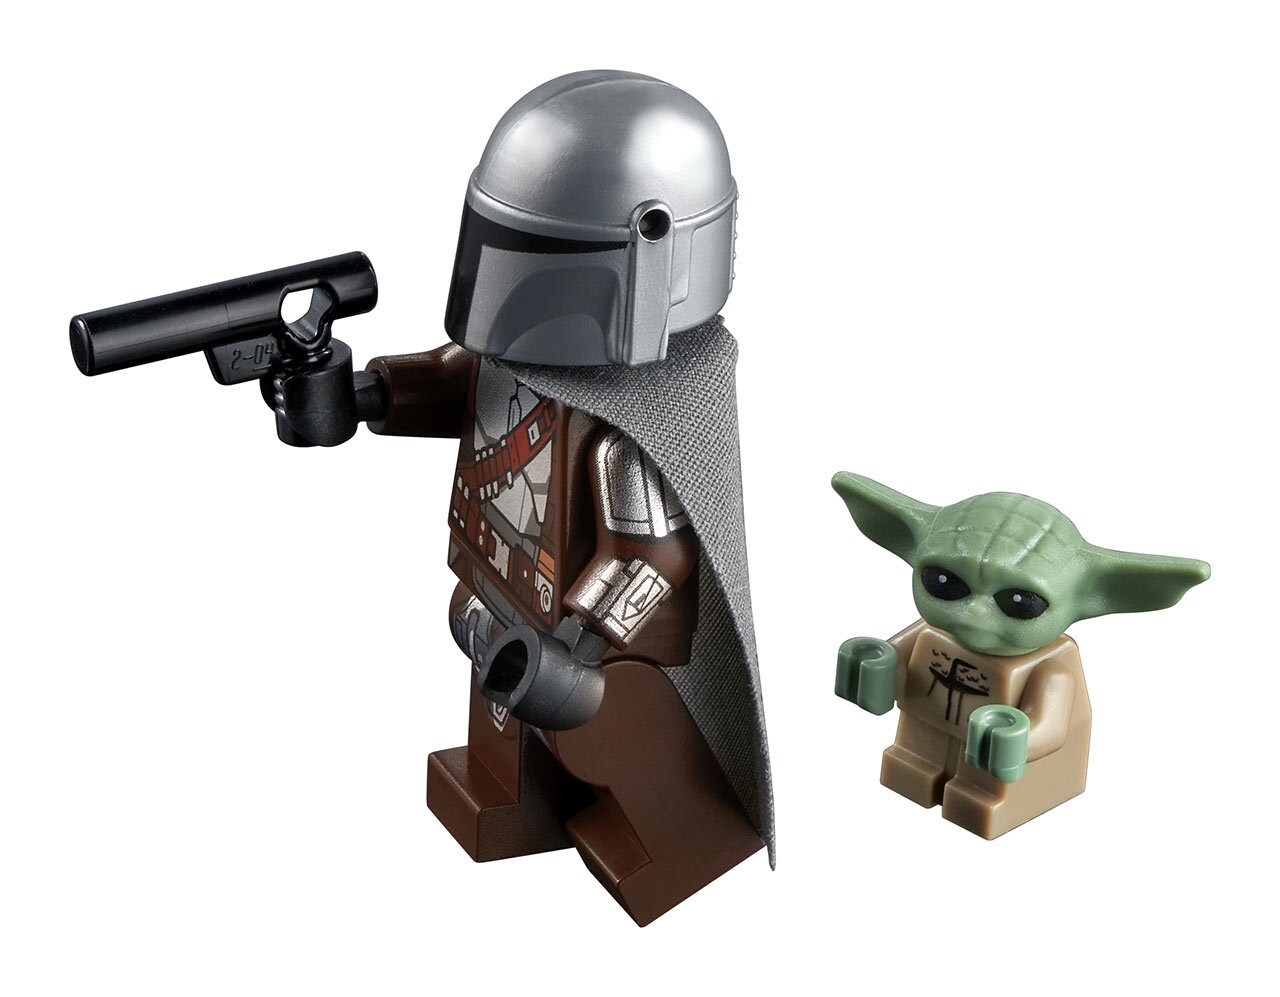 LEGO Star Wars Trouble on Tatooine set